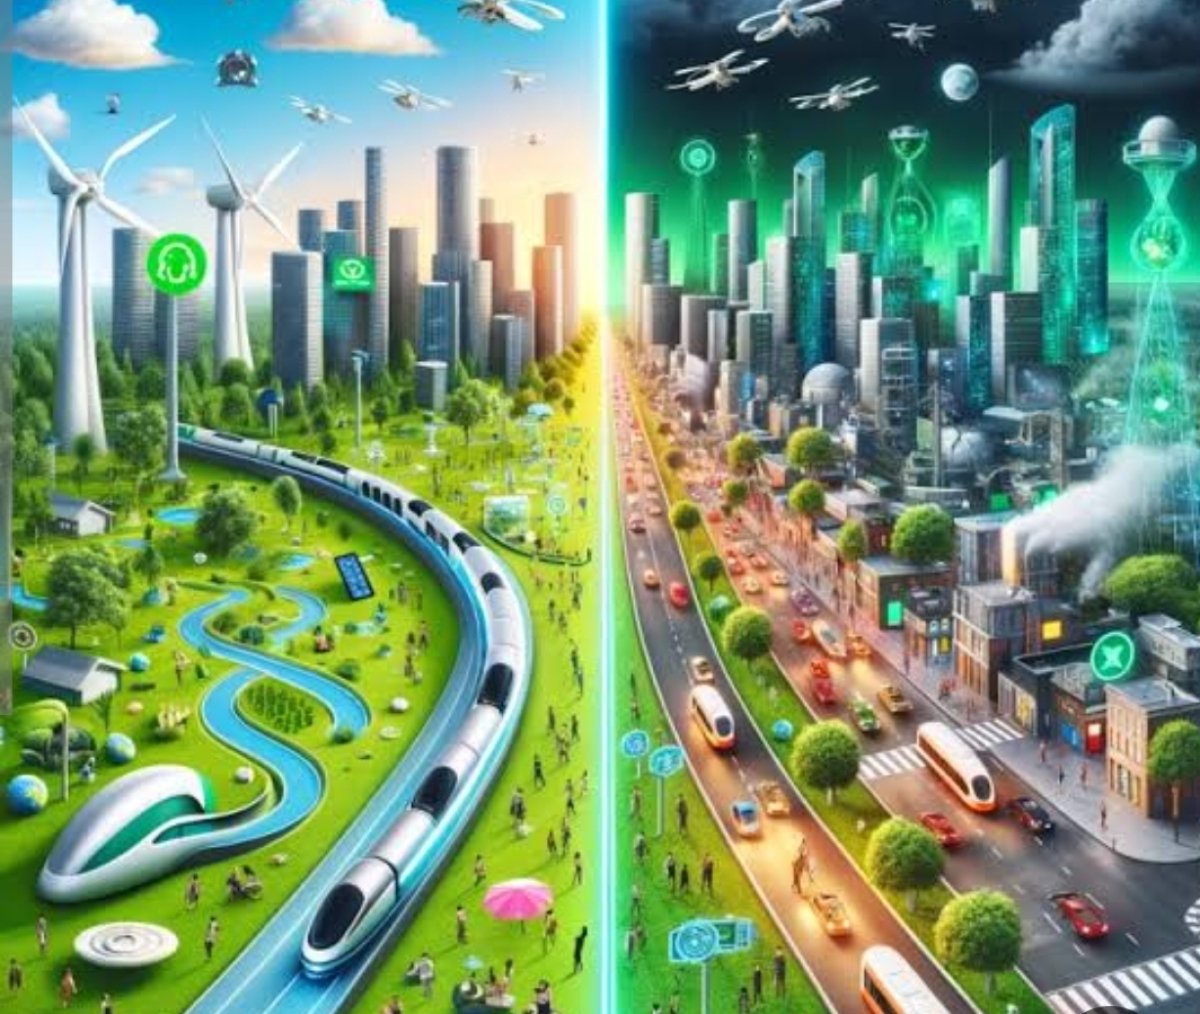 ماستركارد: التواصل البشري والابتكارات التقنية عوامل أساسية لبناء مدن المستقبل